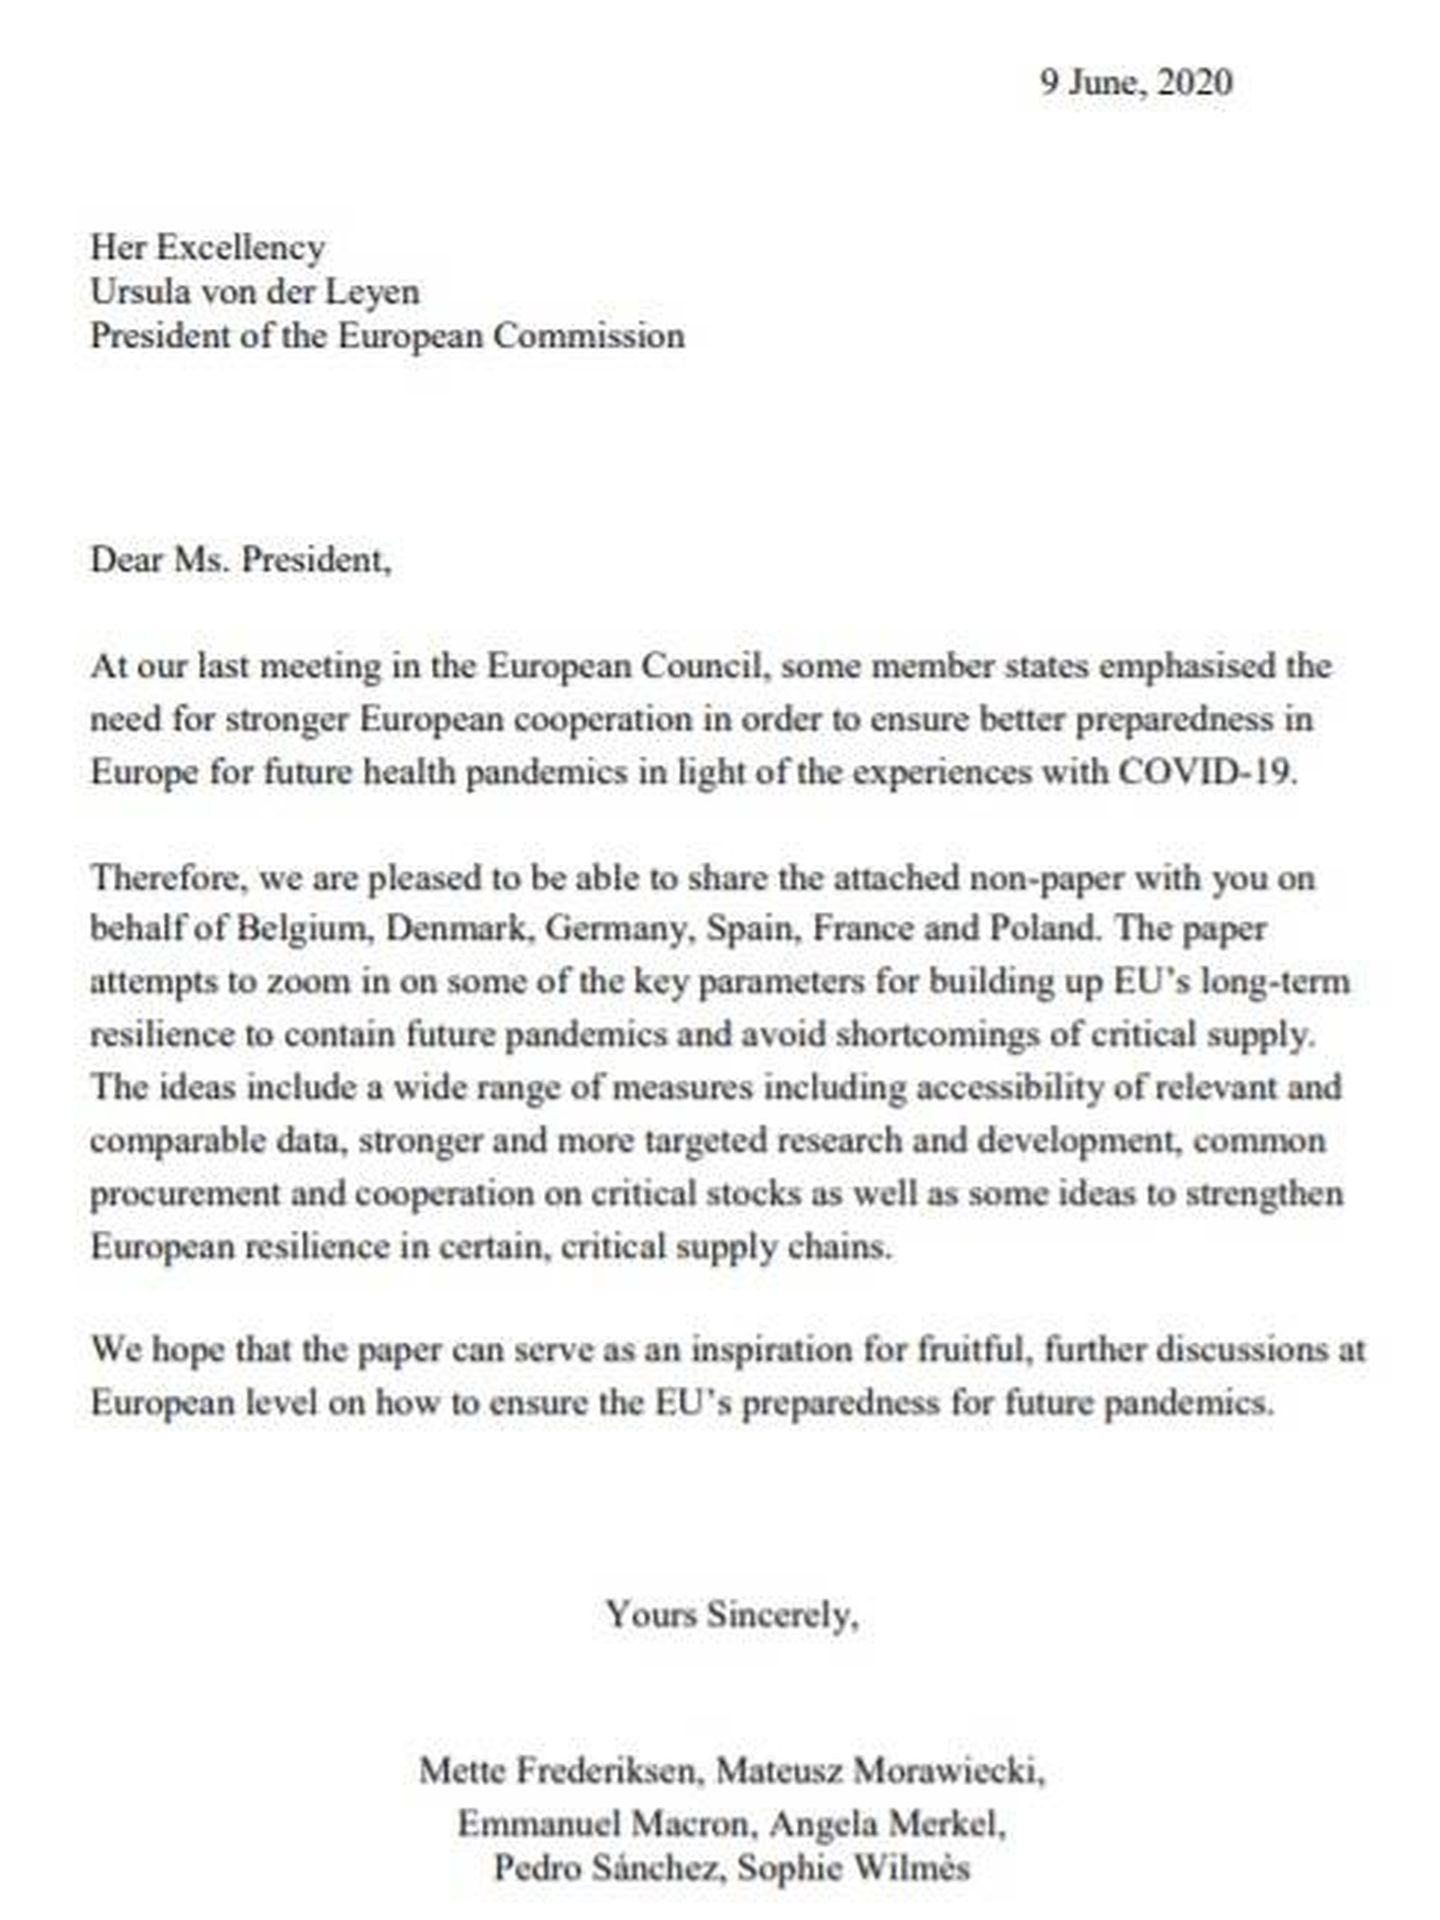 Consulte aquí en PDF la carta y el 'non paper' enviado por Pedro Sánchez y otros cinco líderes europeos a la presidenta de la Comisión Europea, Ursula von der Leyen.